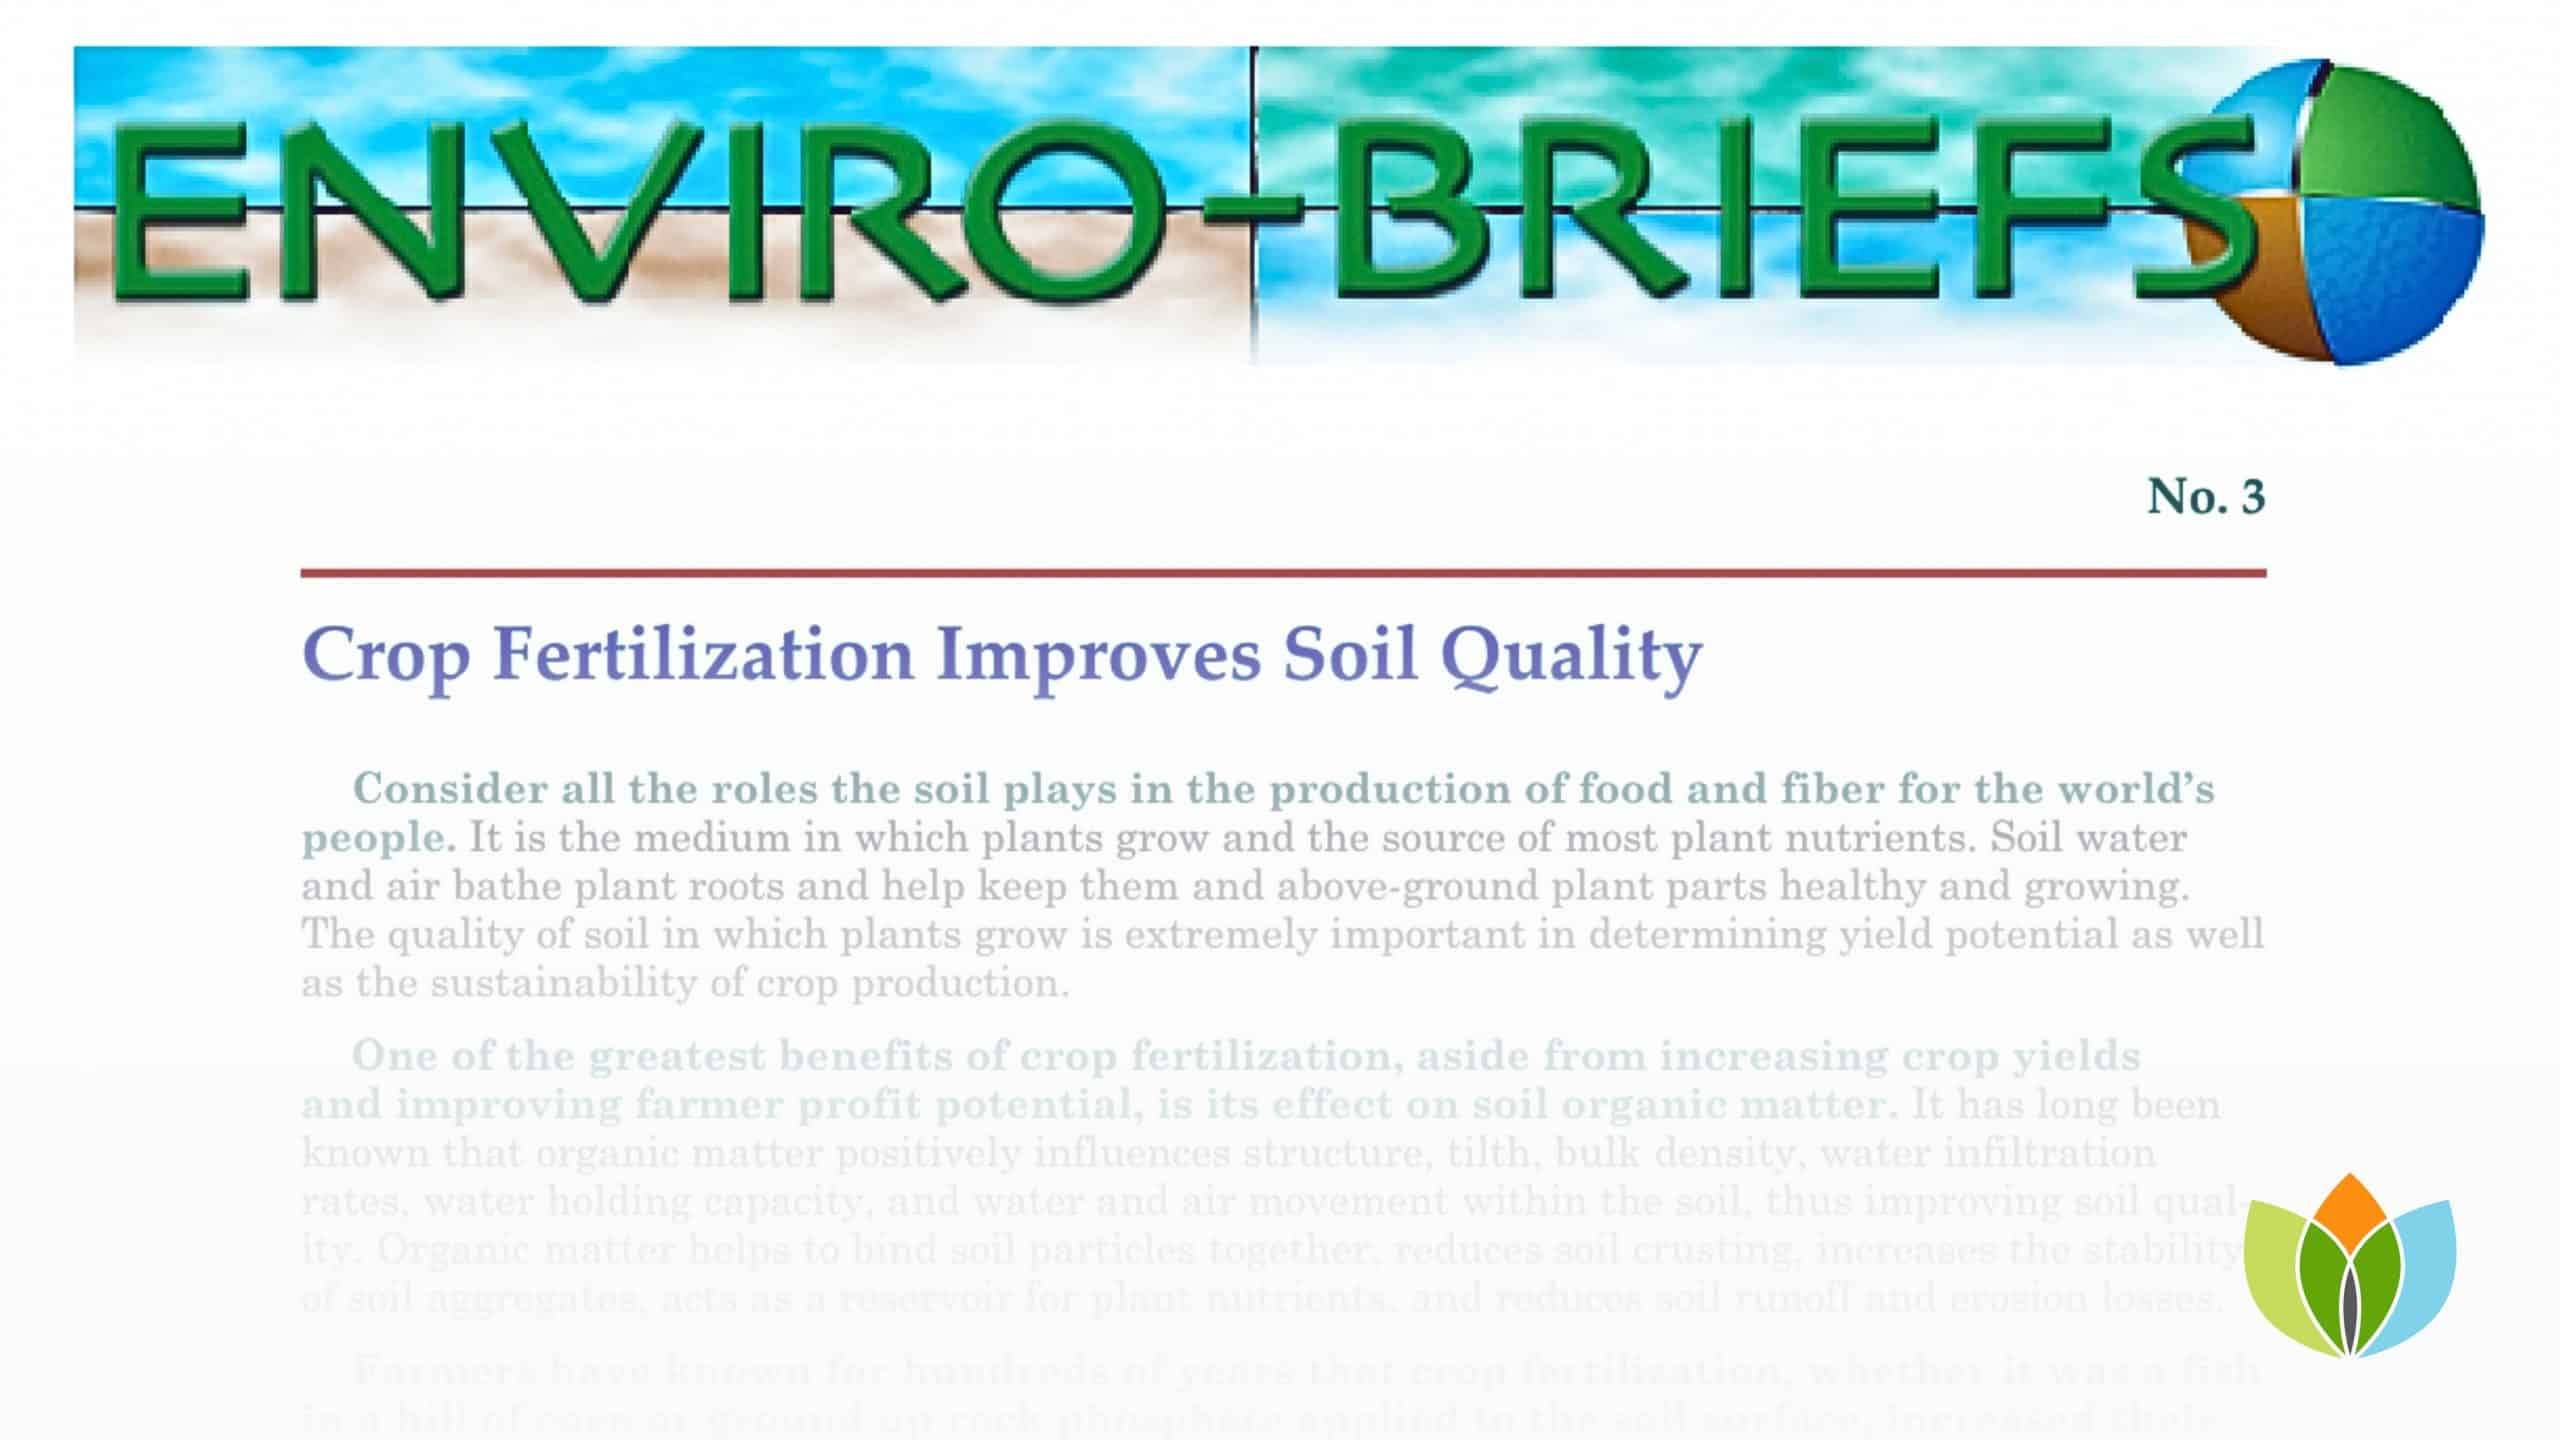 Crop Fertilization Improves Soil Quality